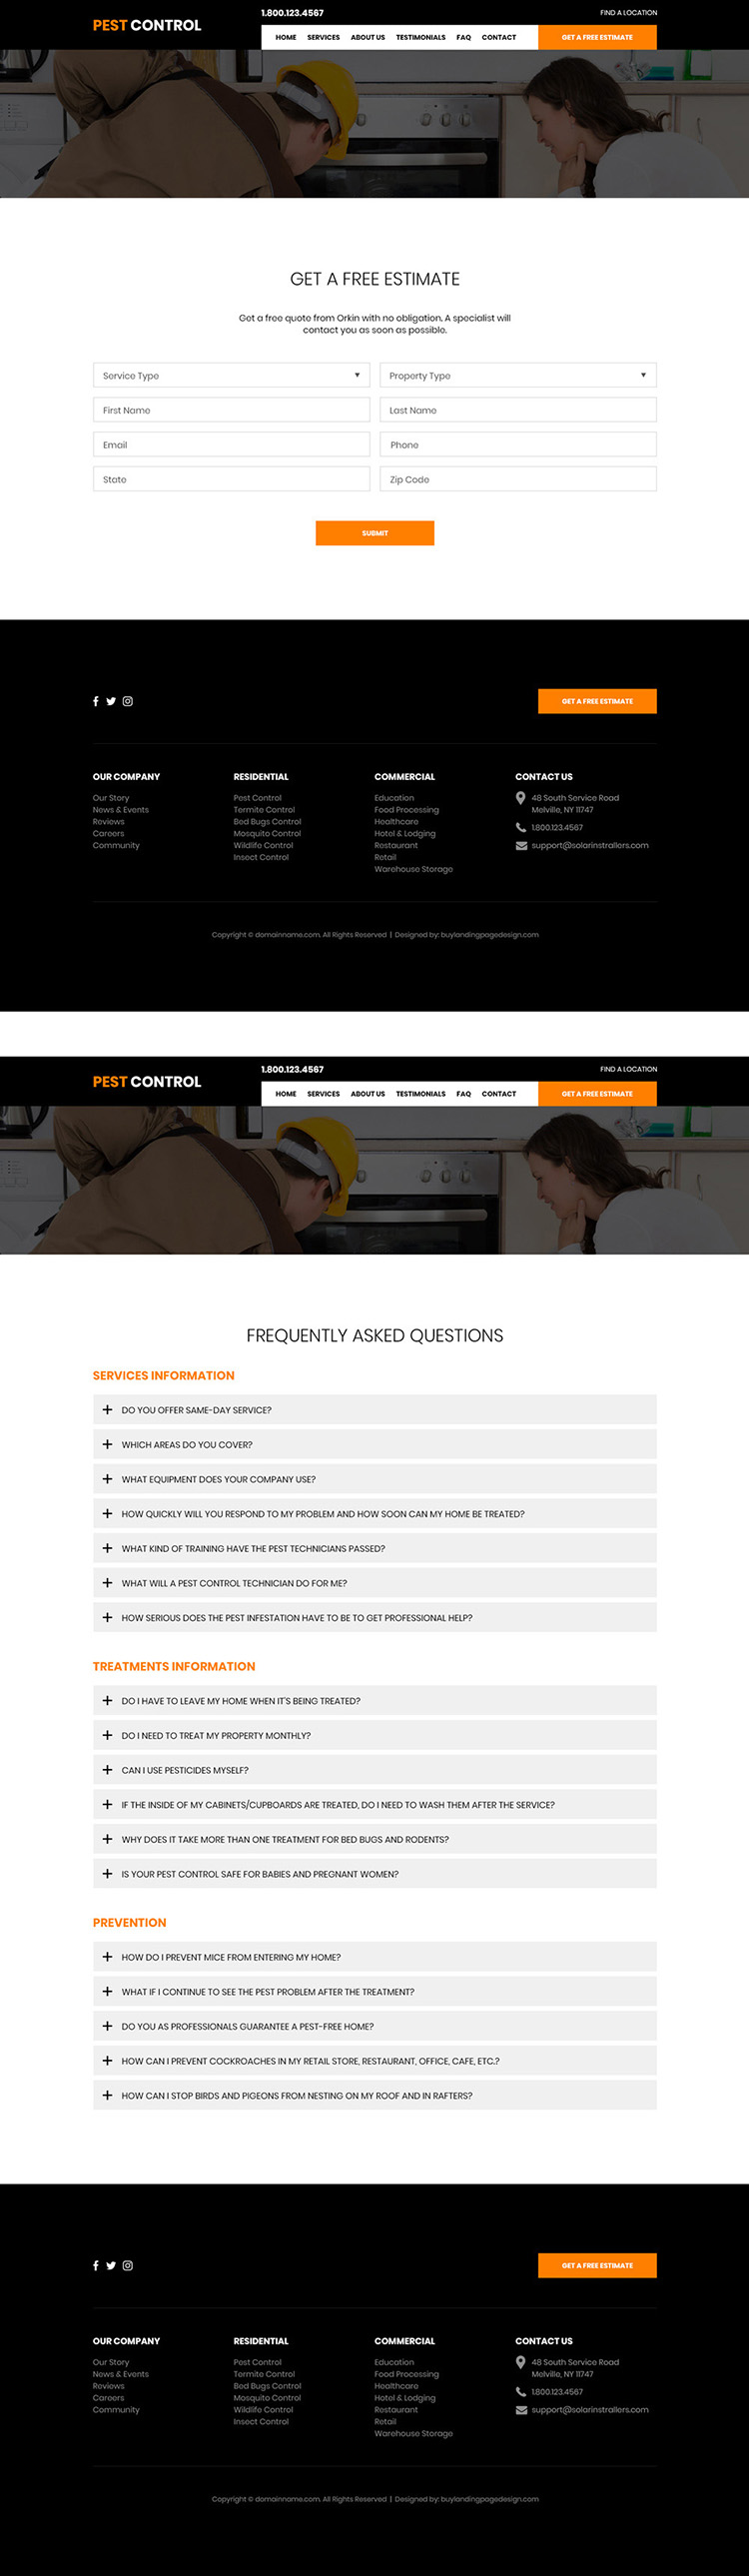 affordable pest control service responsive website design